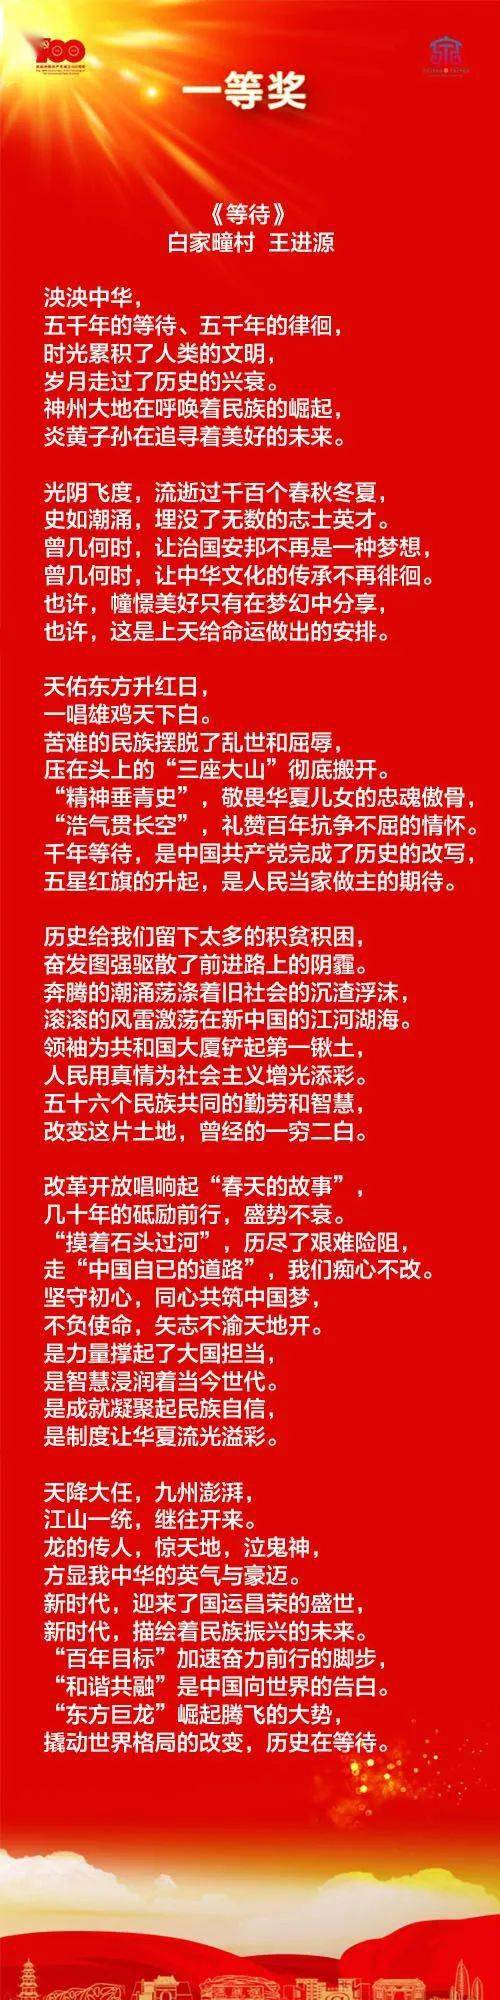 【党史】"峥嵘百年 岁月如诗"温泉镇原创红色诗词大赛